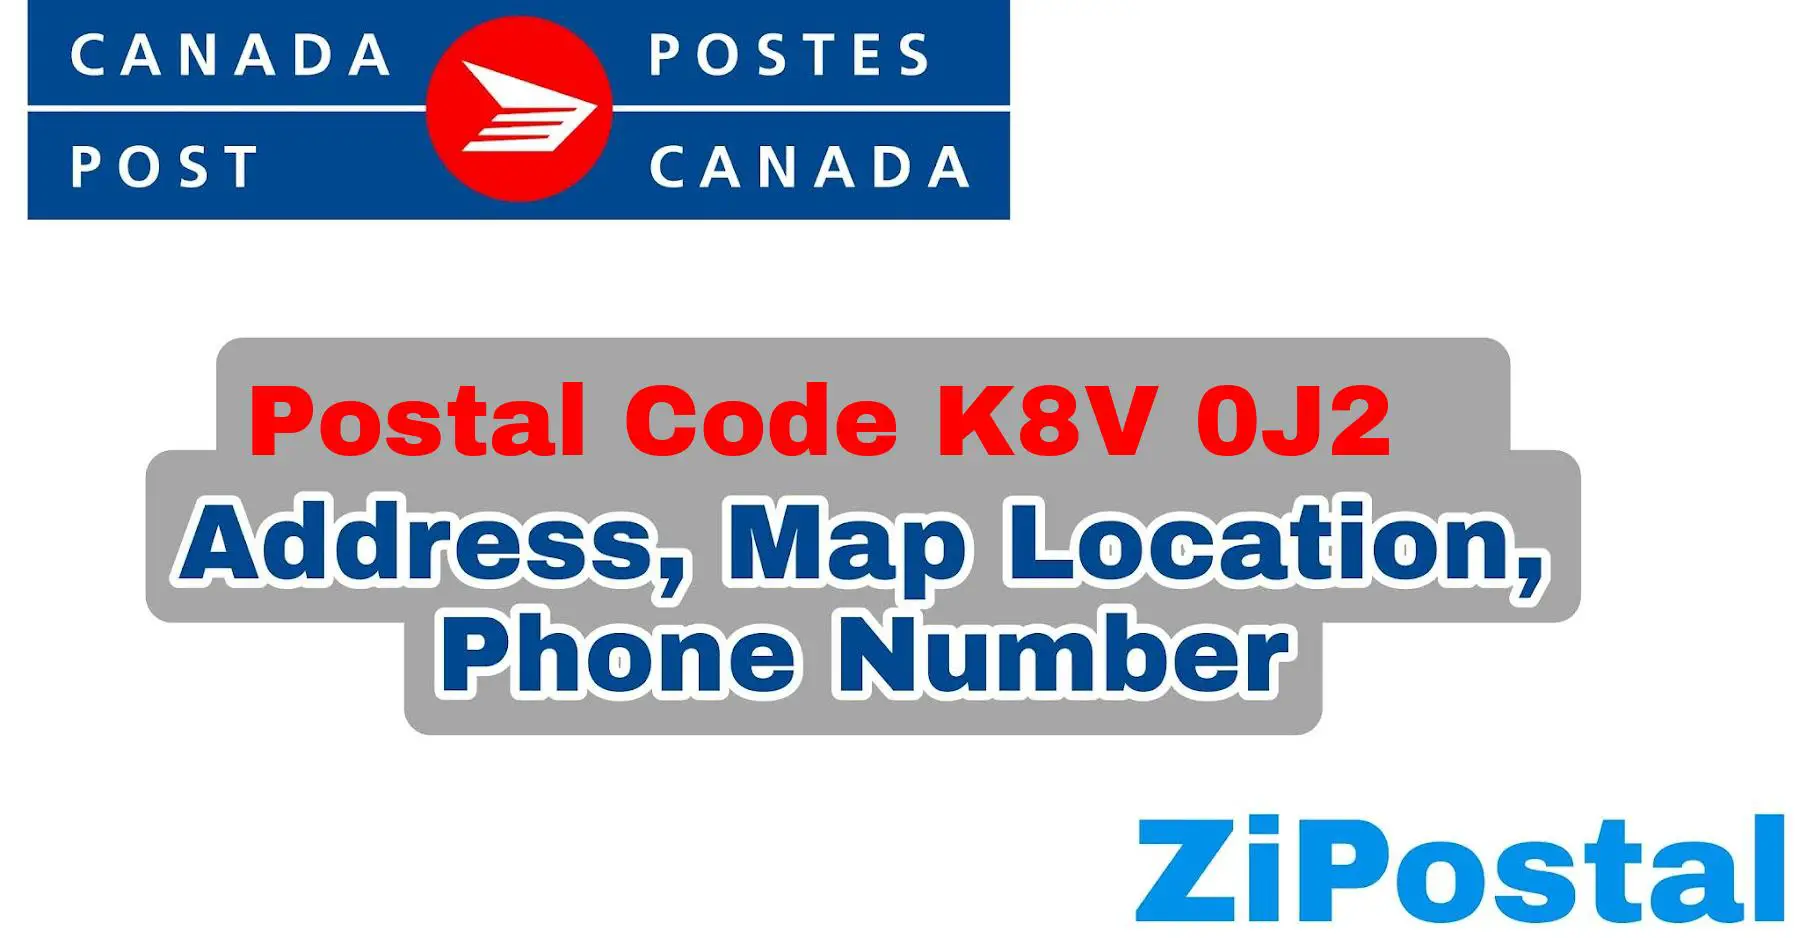 Postal Code K8V 0J2 Address Map Location and Phone Number